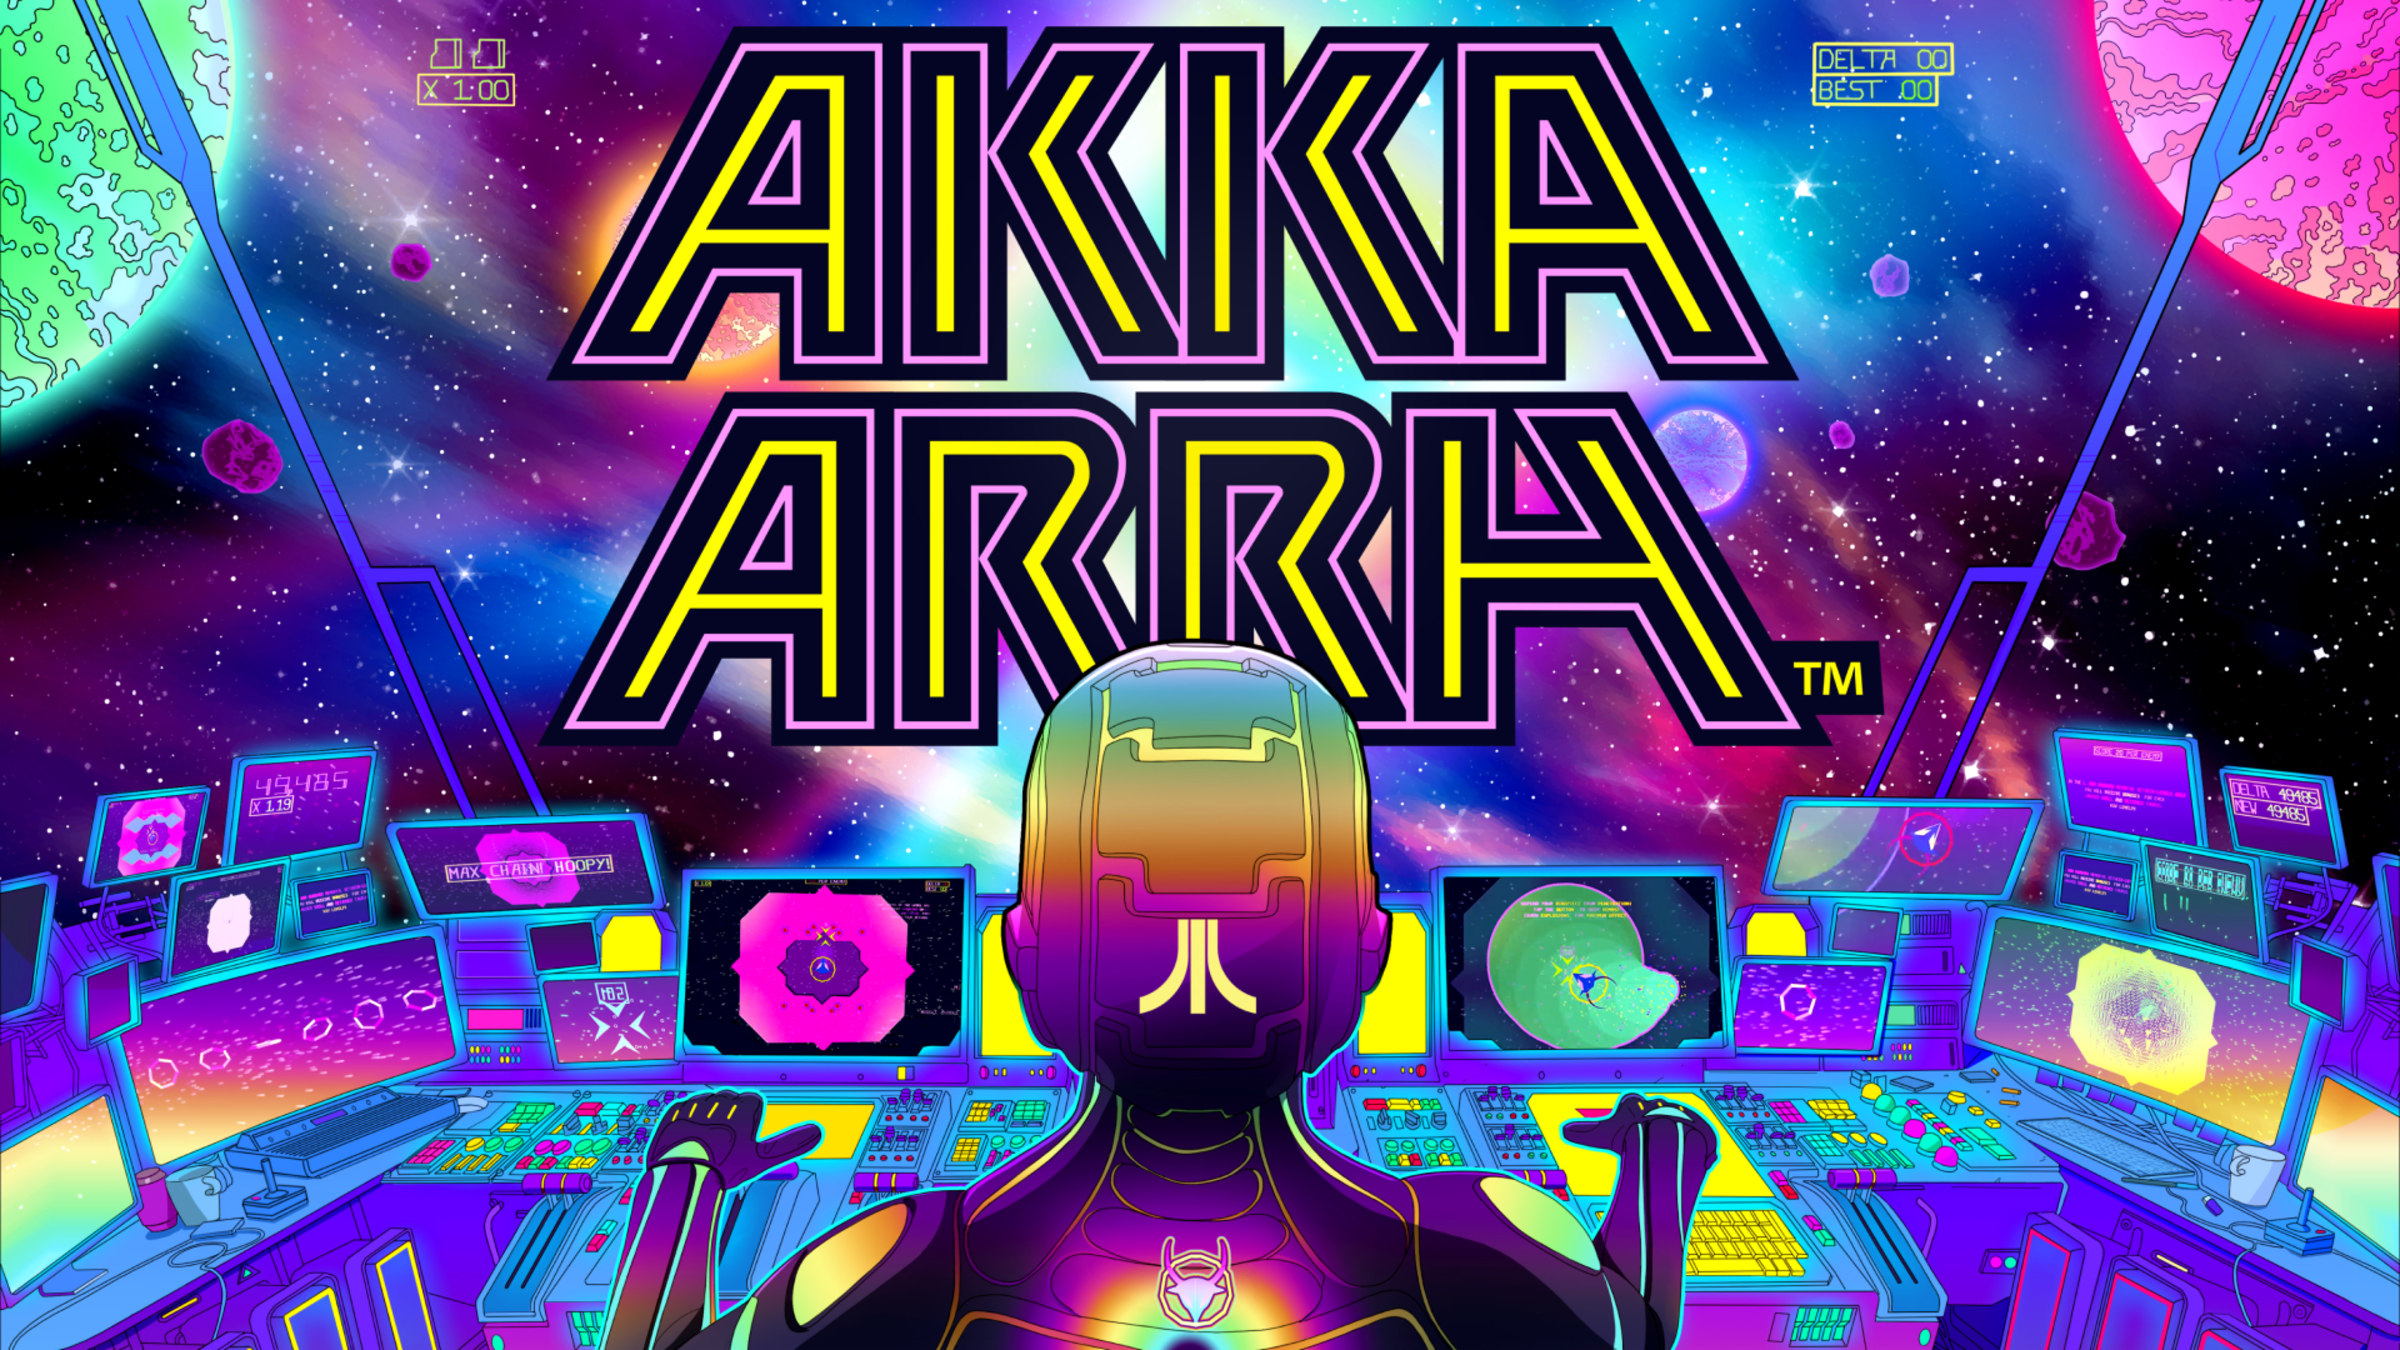 Akka Arrh PS4 Version Full Game Setup Free Download